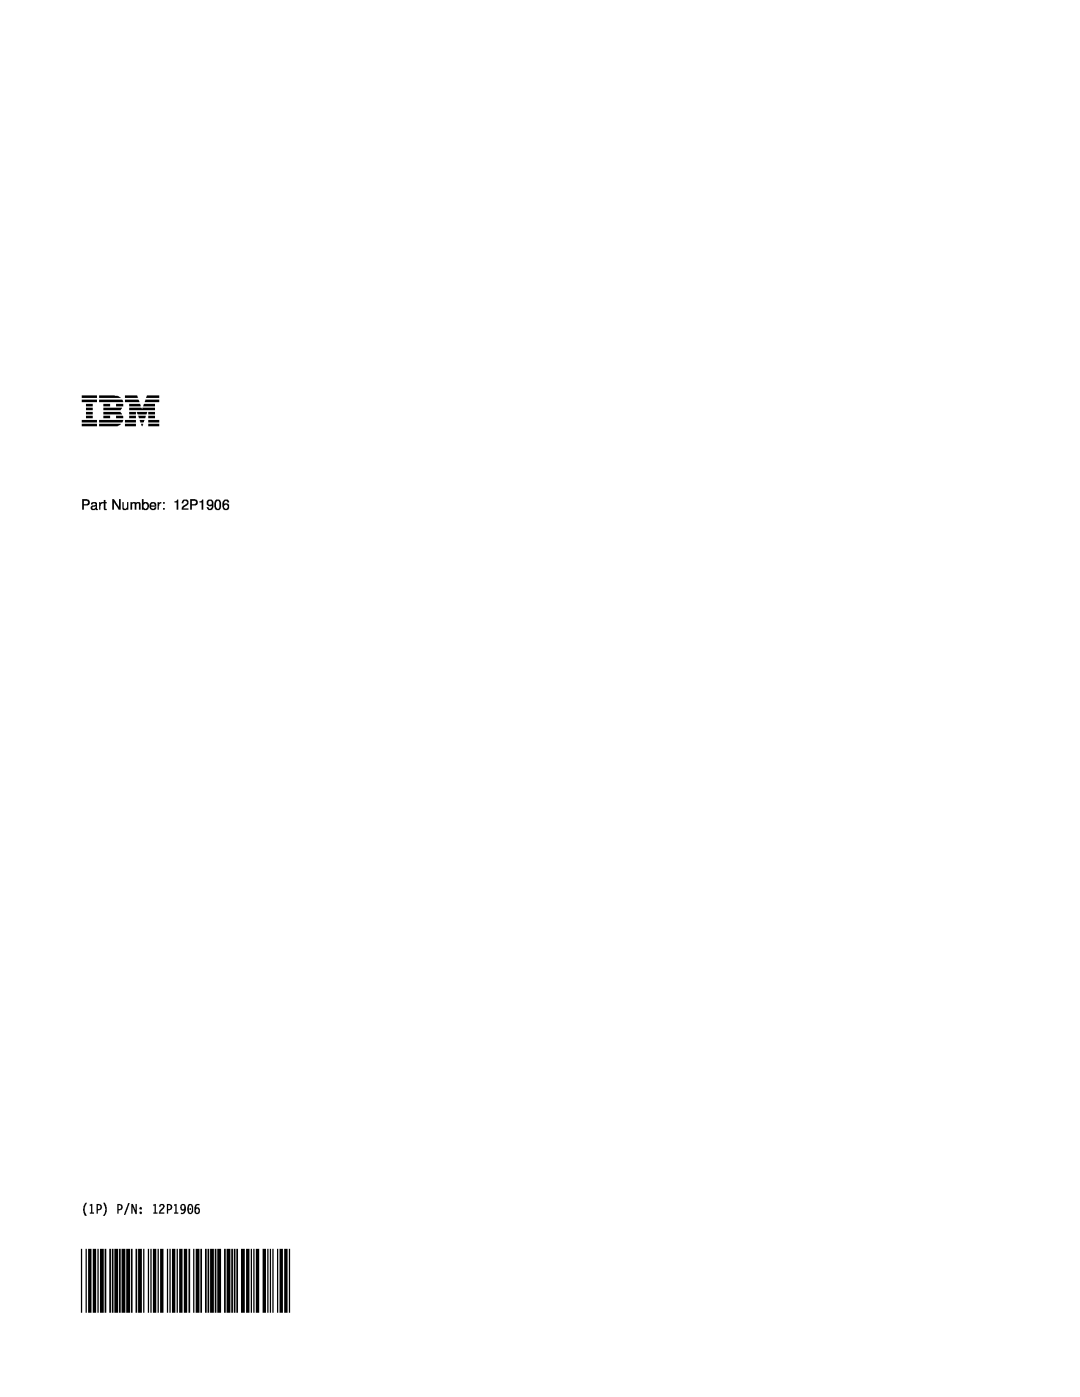 IBM A21e manual Part Number 12P1906, 1P P/N 12P1906 